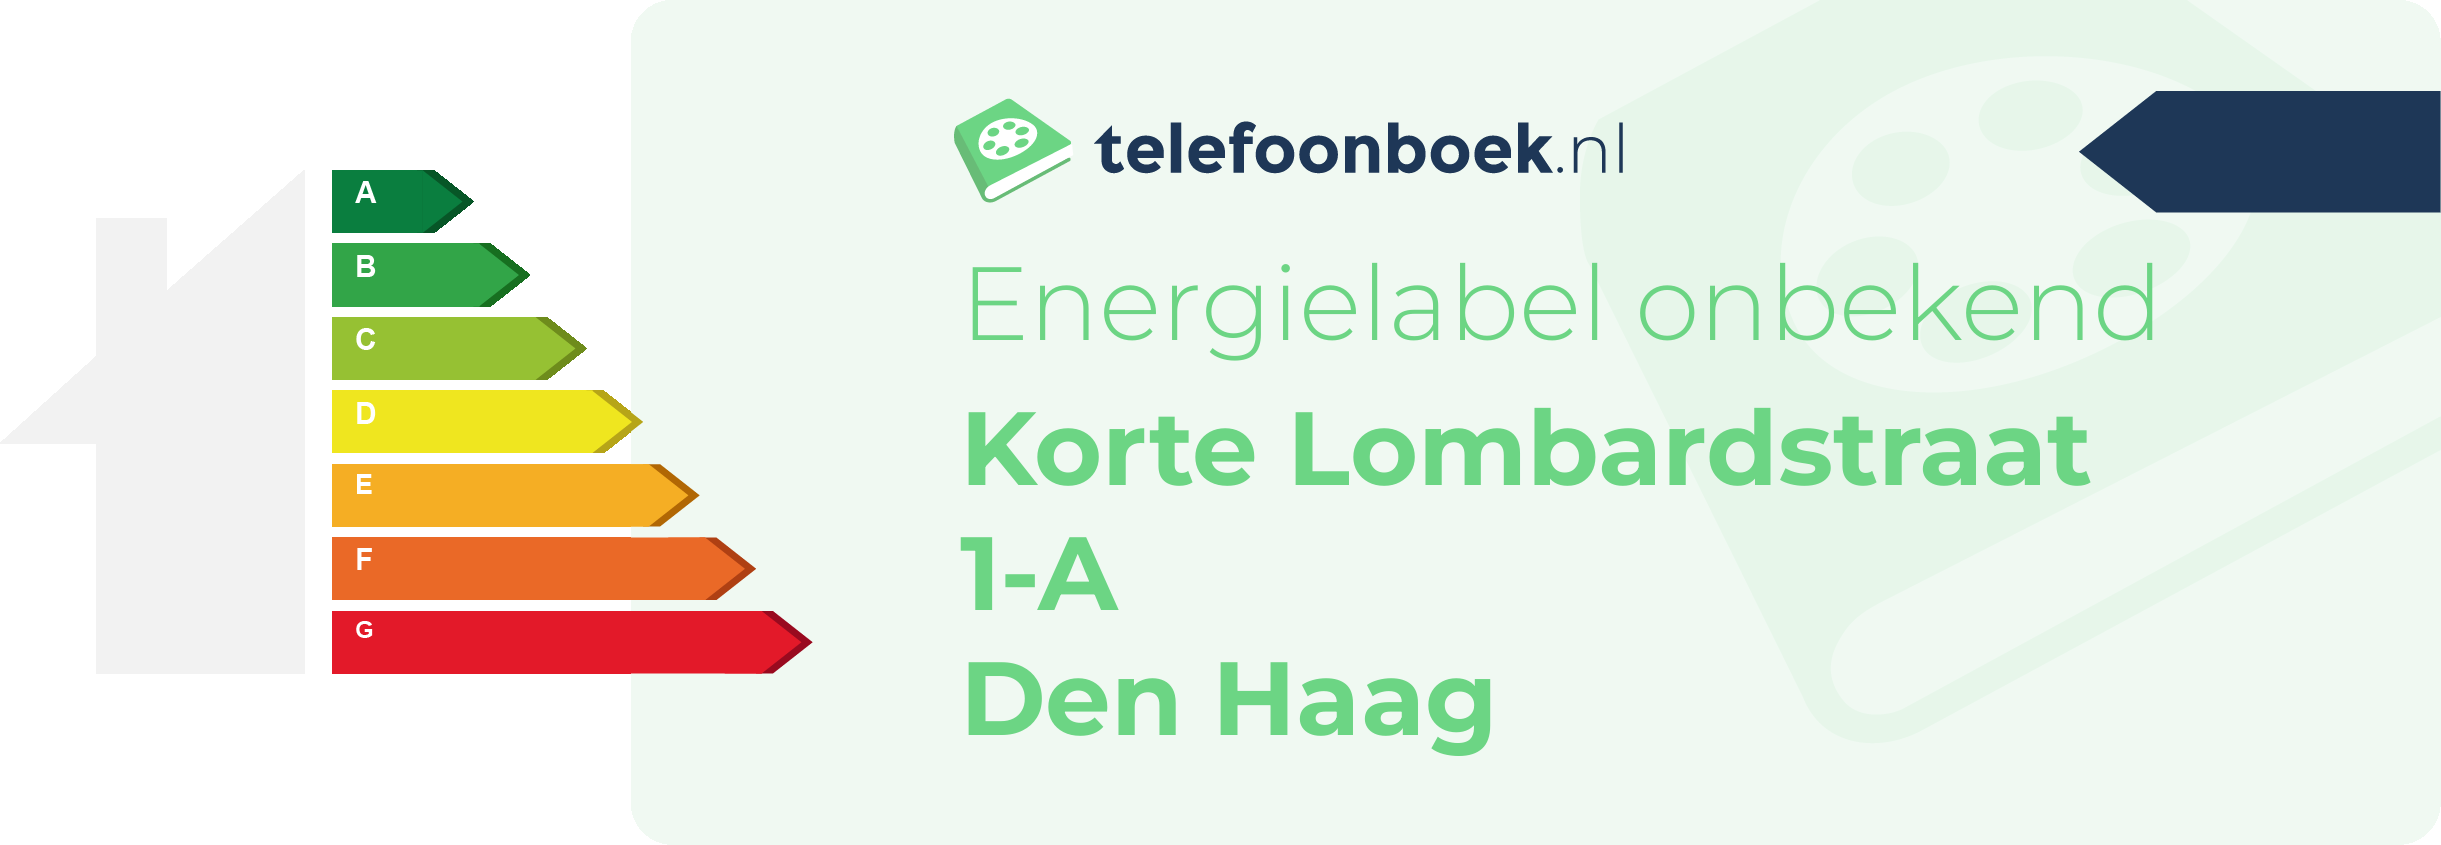 Energielabel Korte Lombardstraat 1-A Den Haag